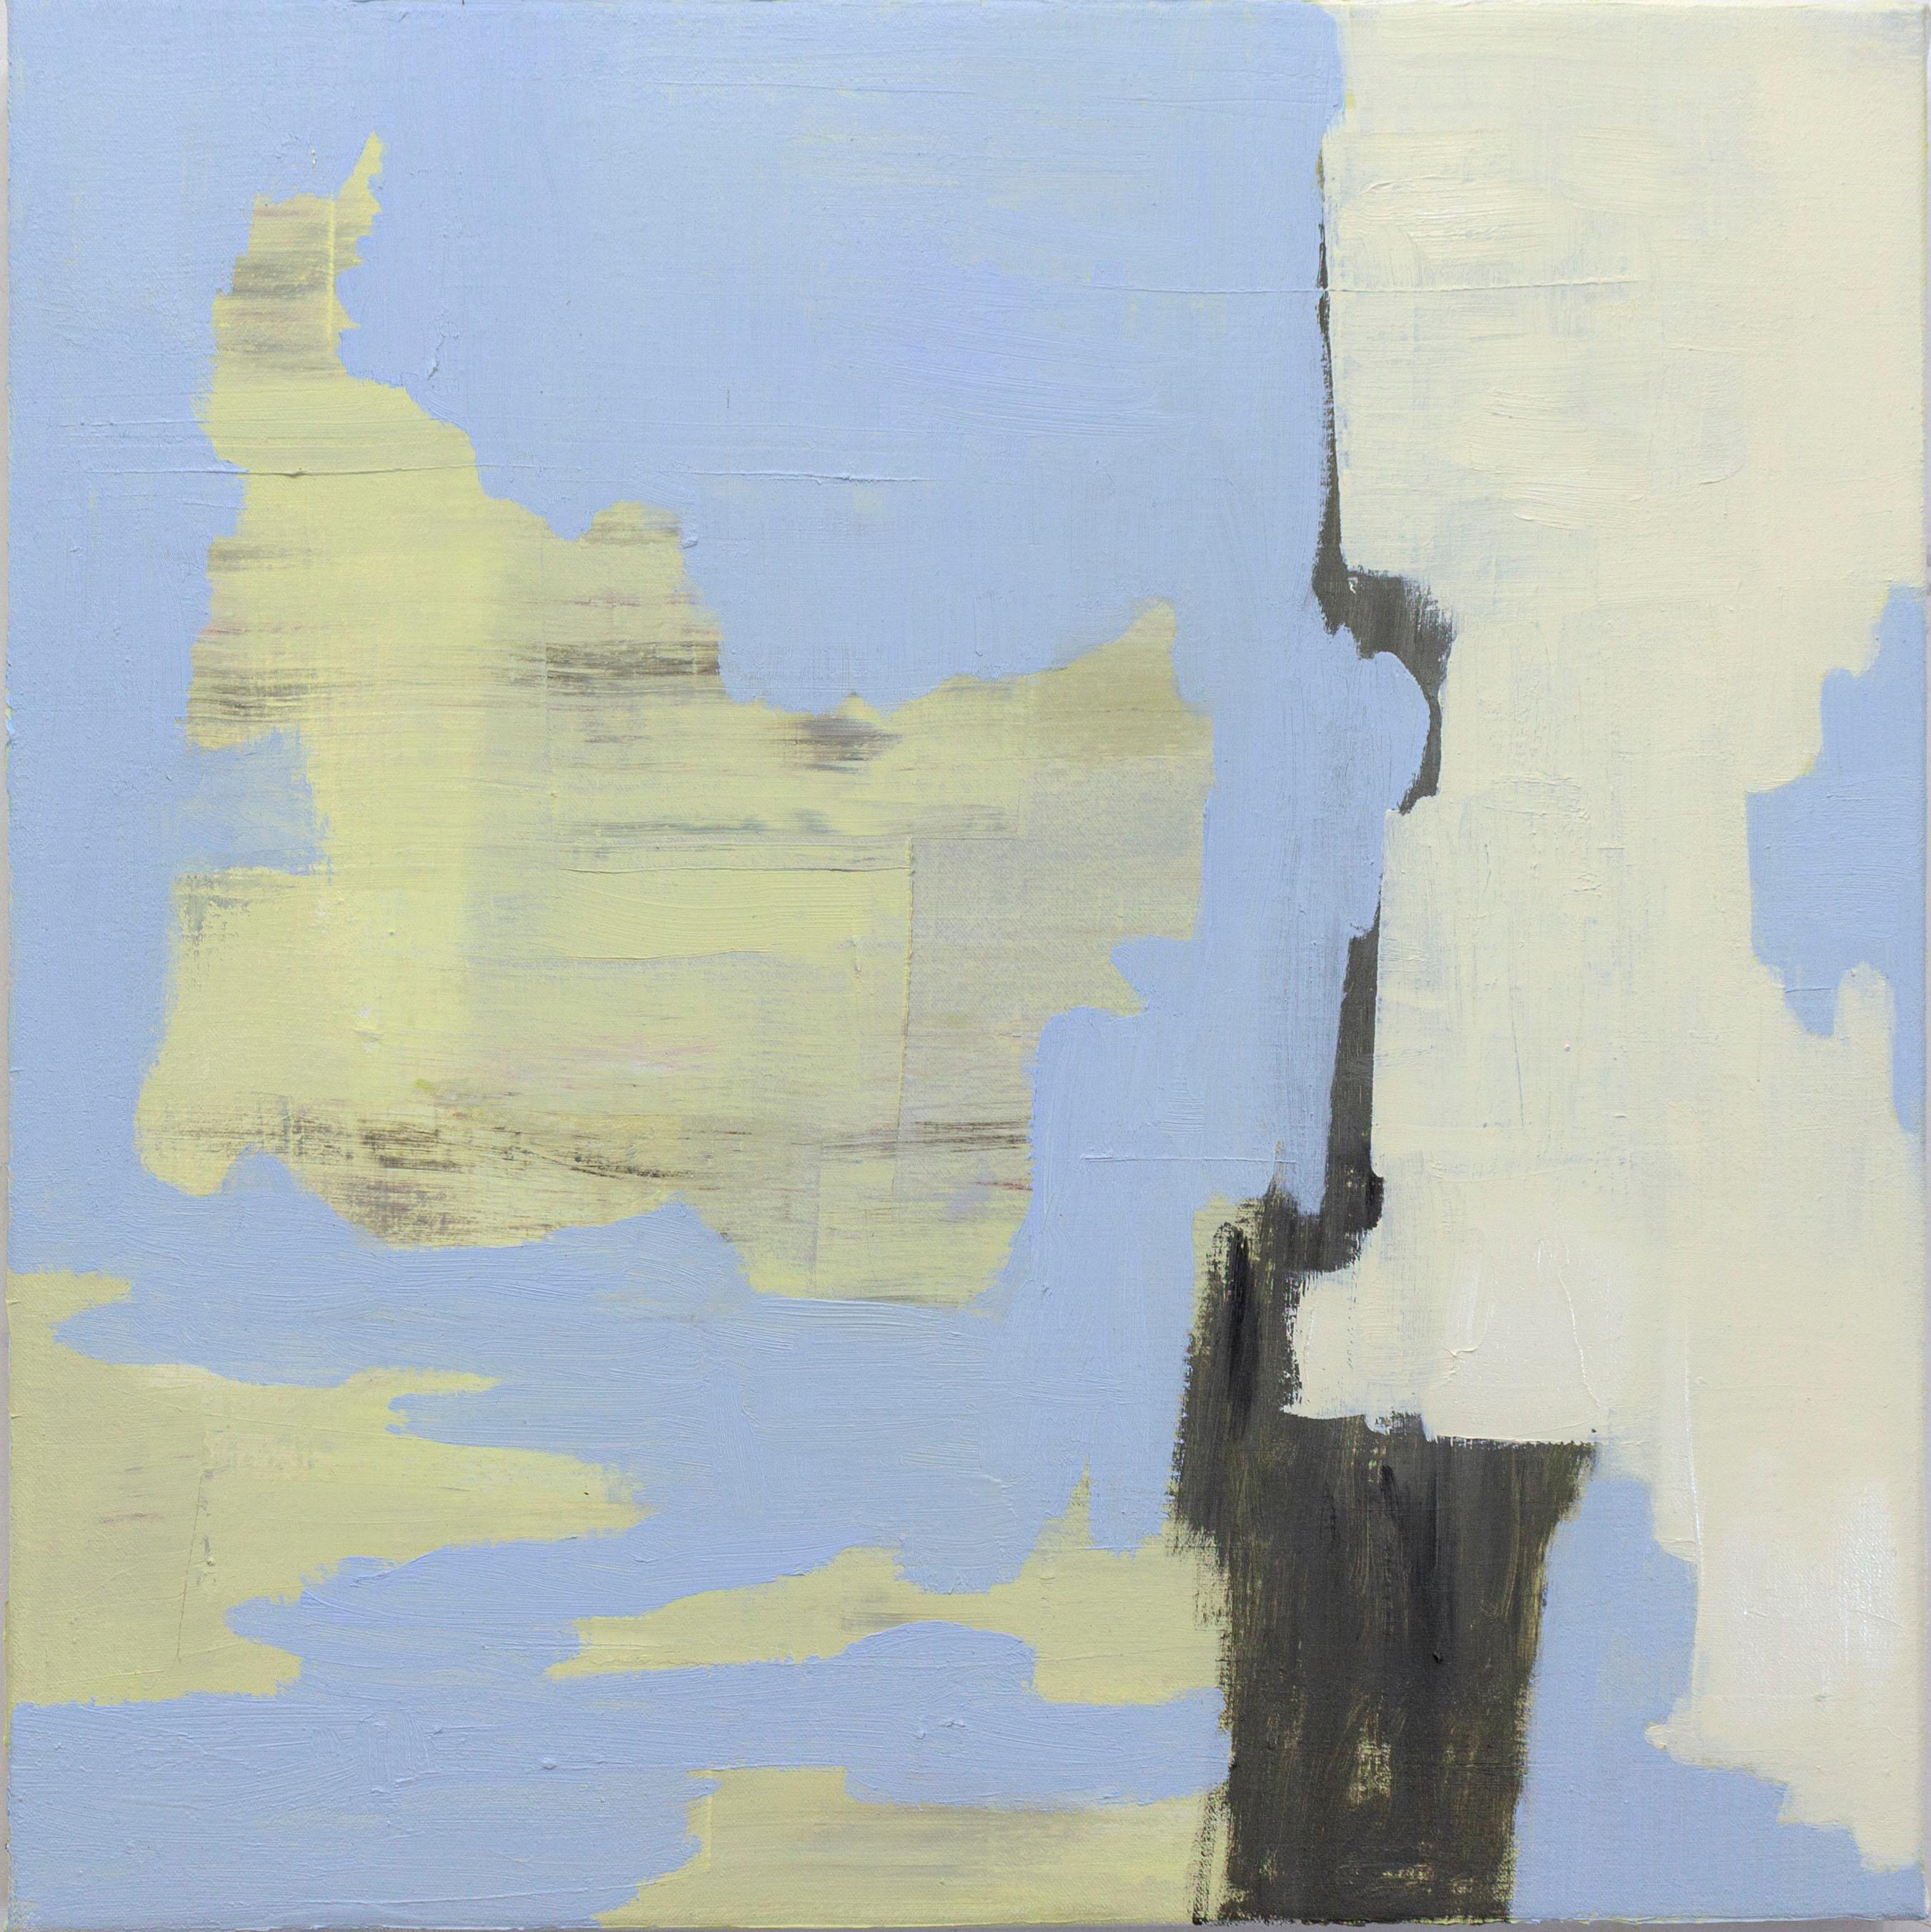 Deborah Dancy "Until Tomorrow" - Abstract oil on canvas 